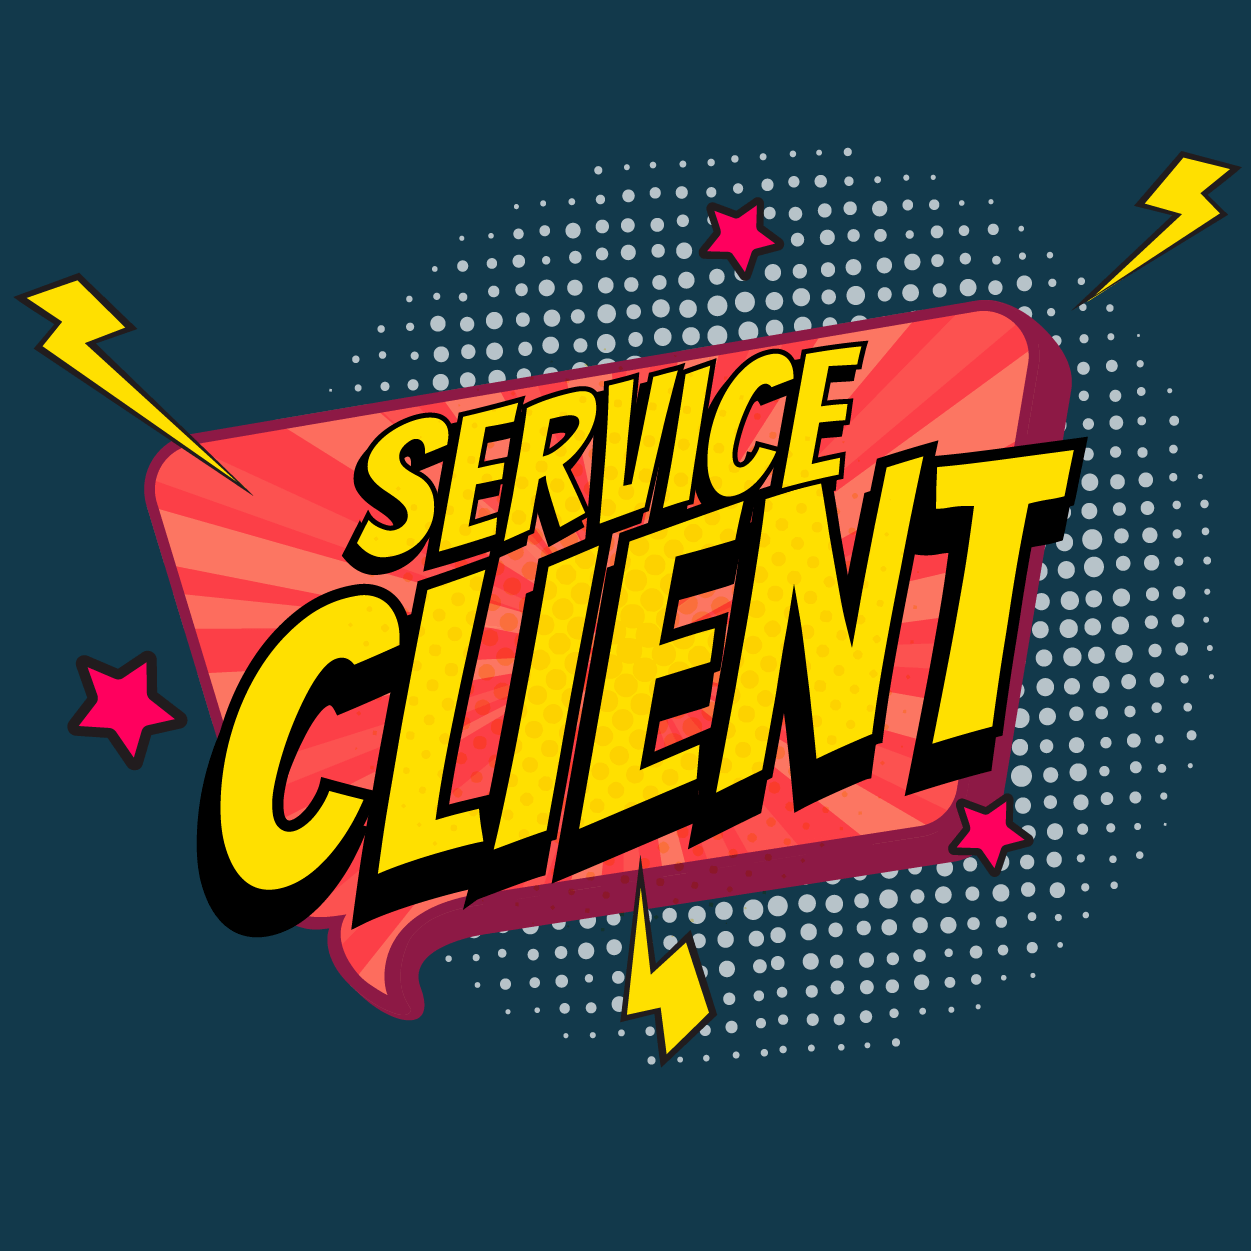 Service client externalisé Lyon